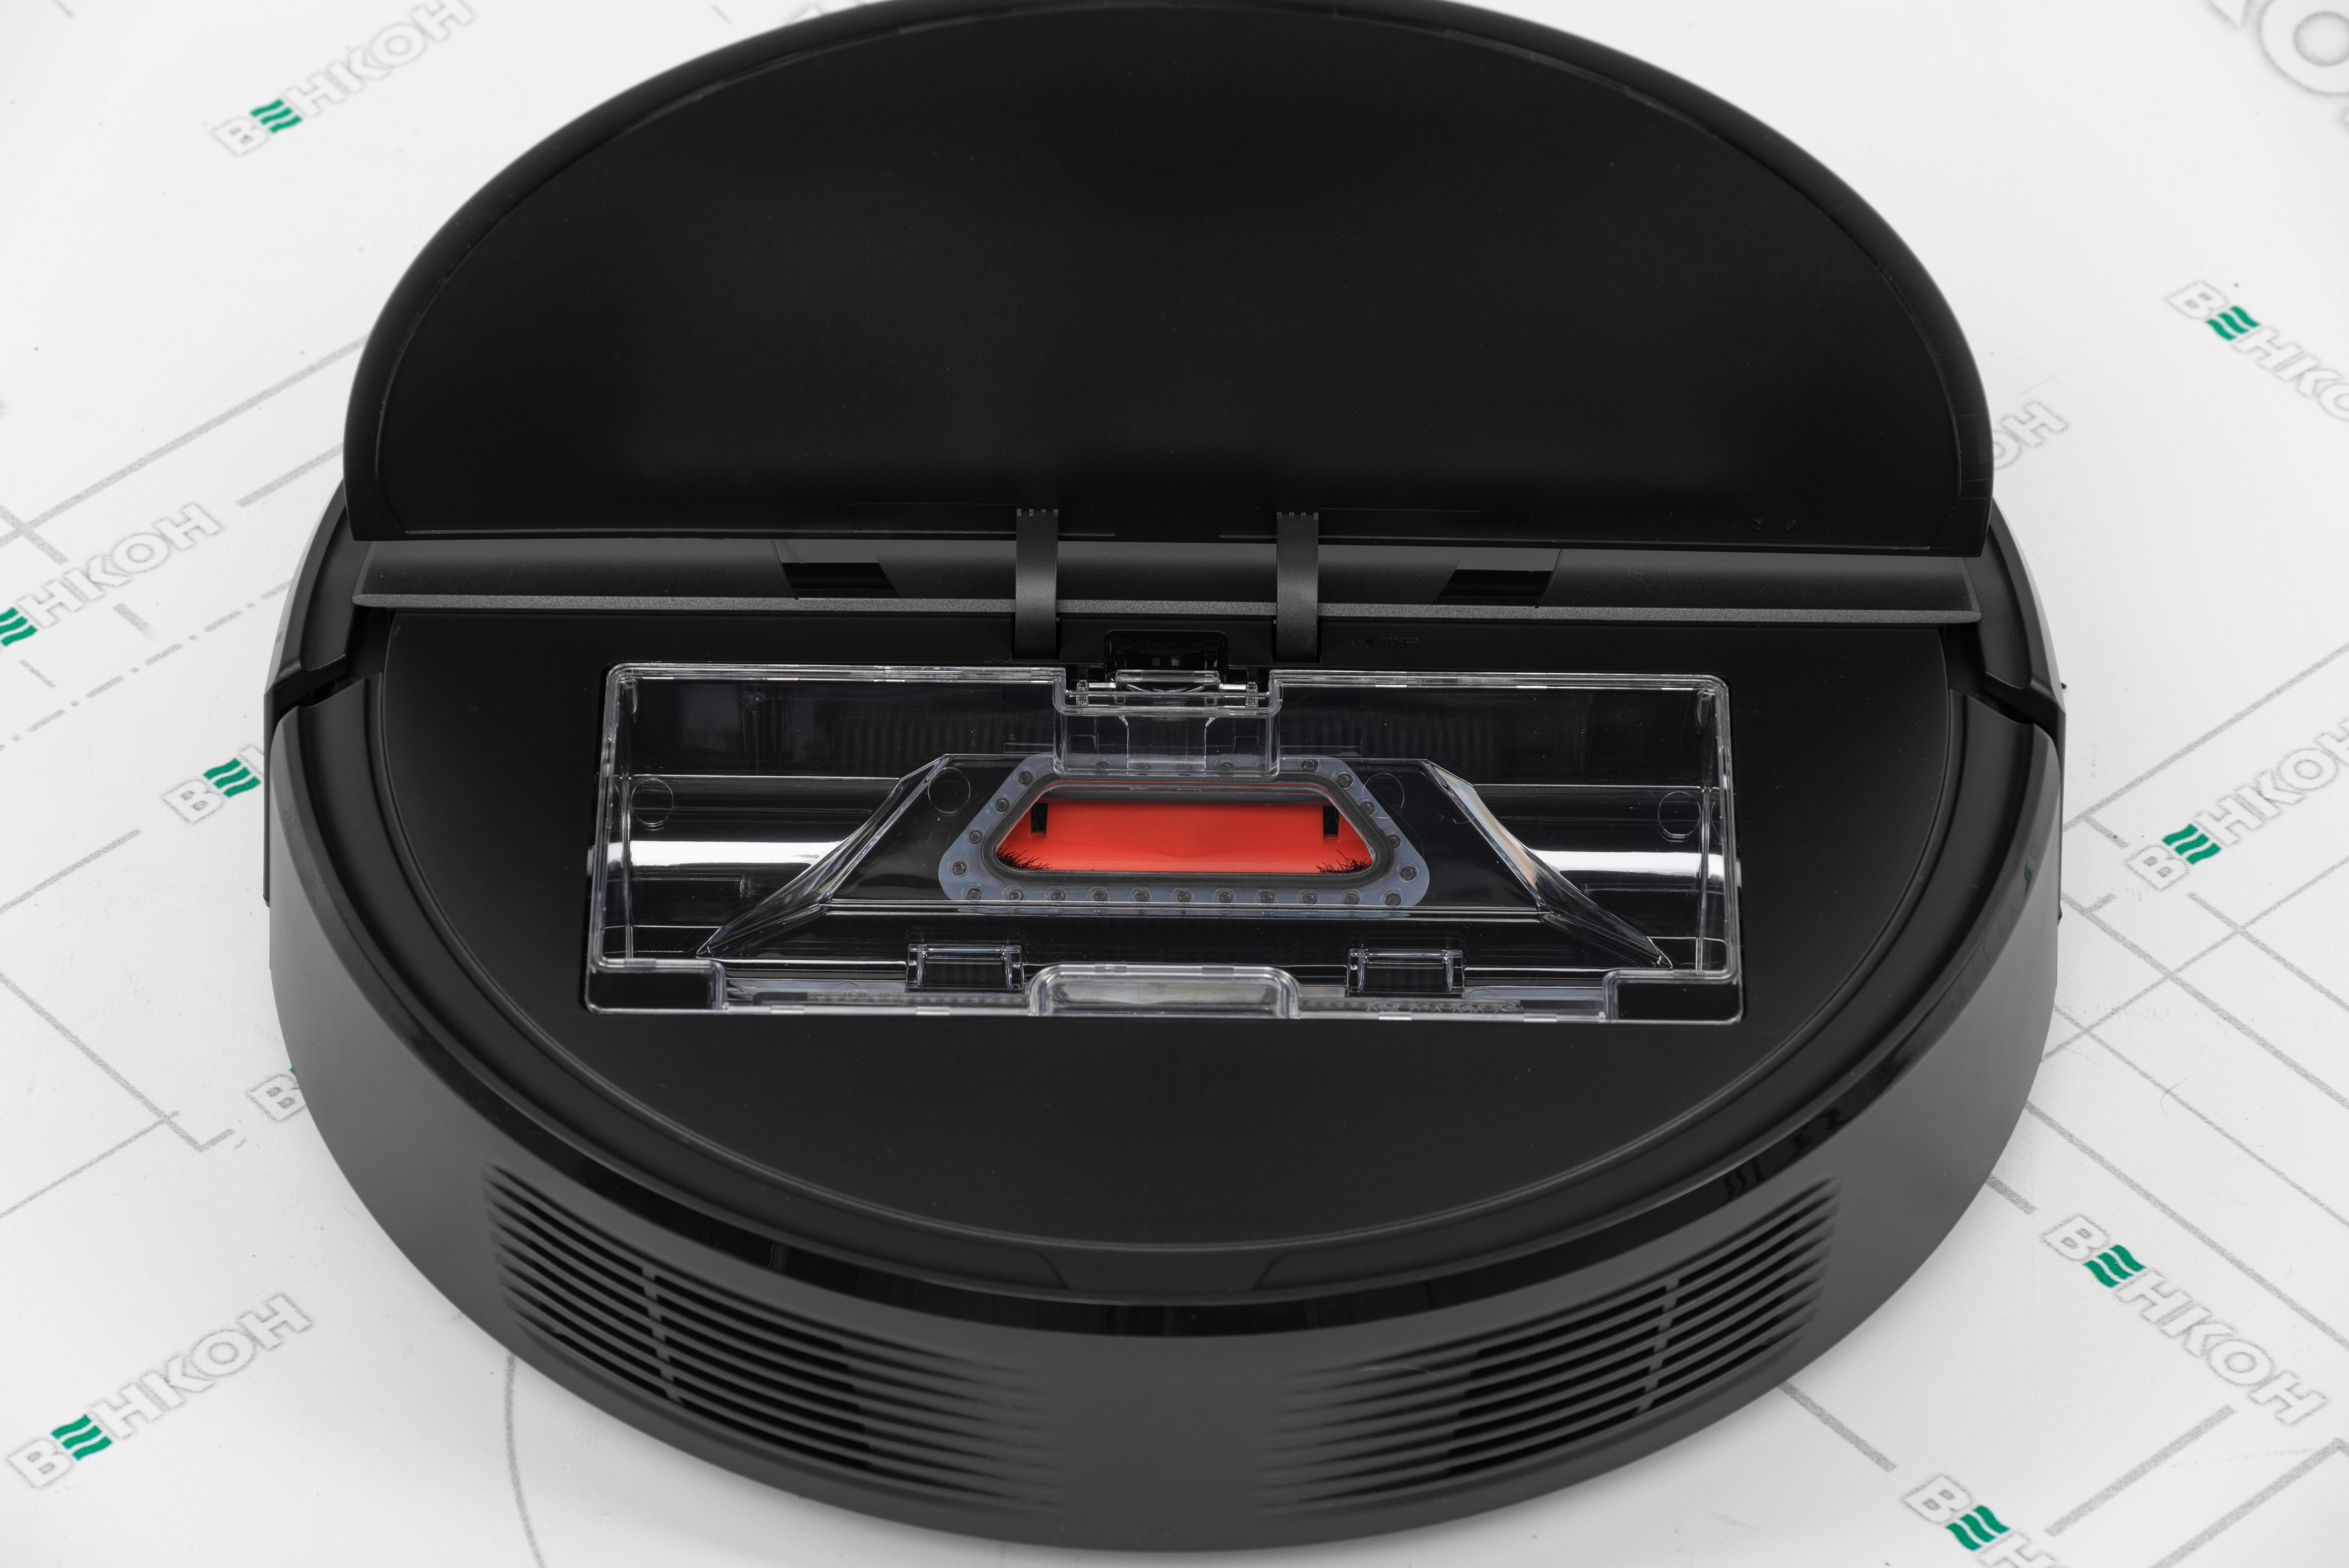 Робот-пылесос Roborock E5 Vacuum Cleaner Black обзор - фото 11